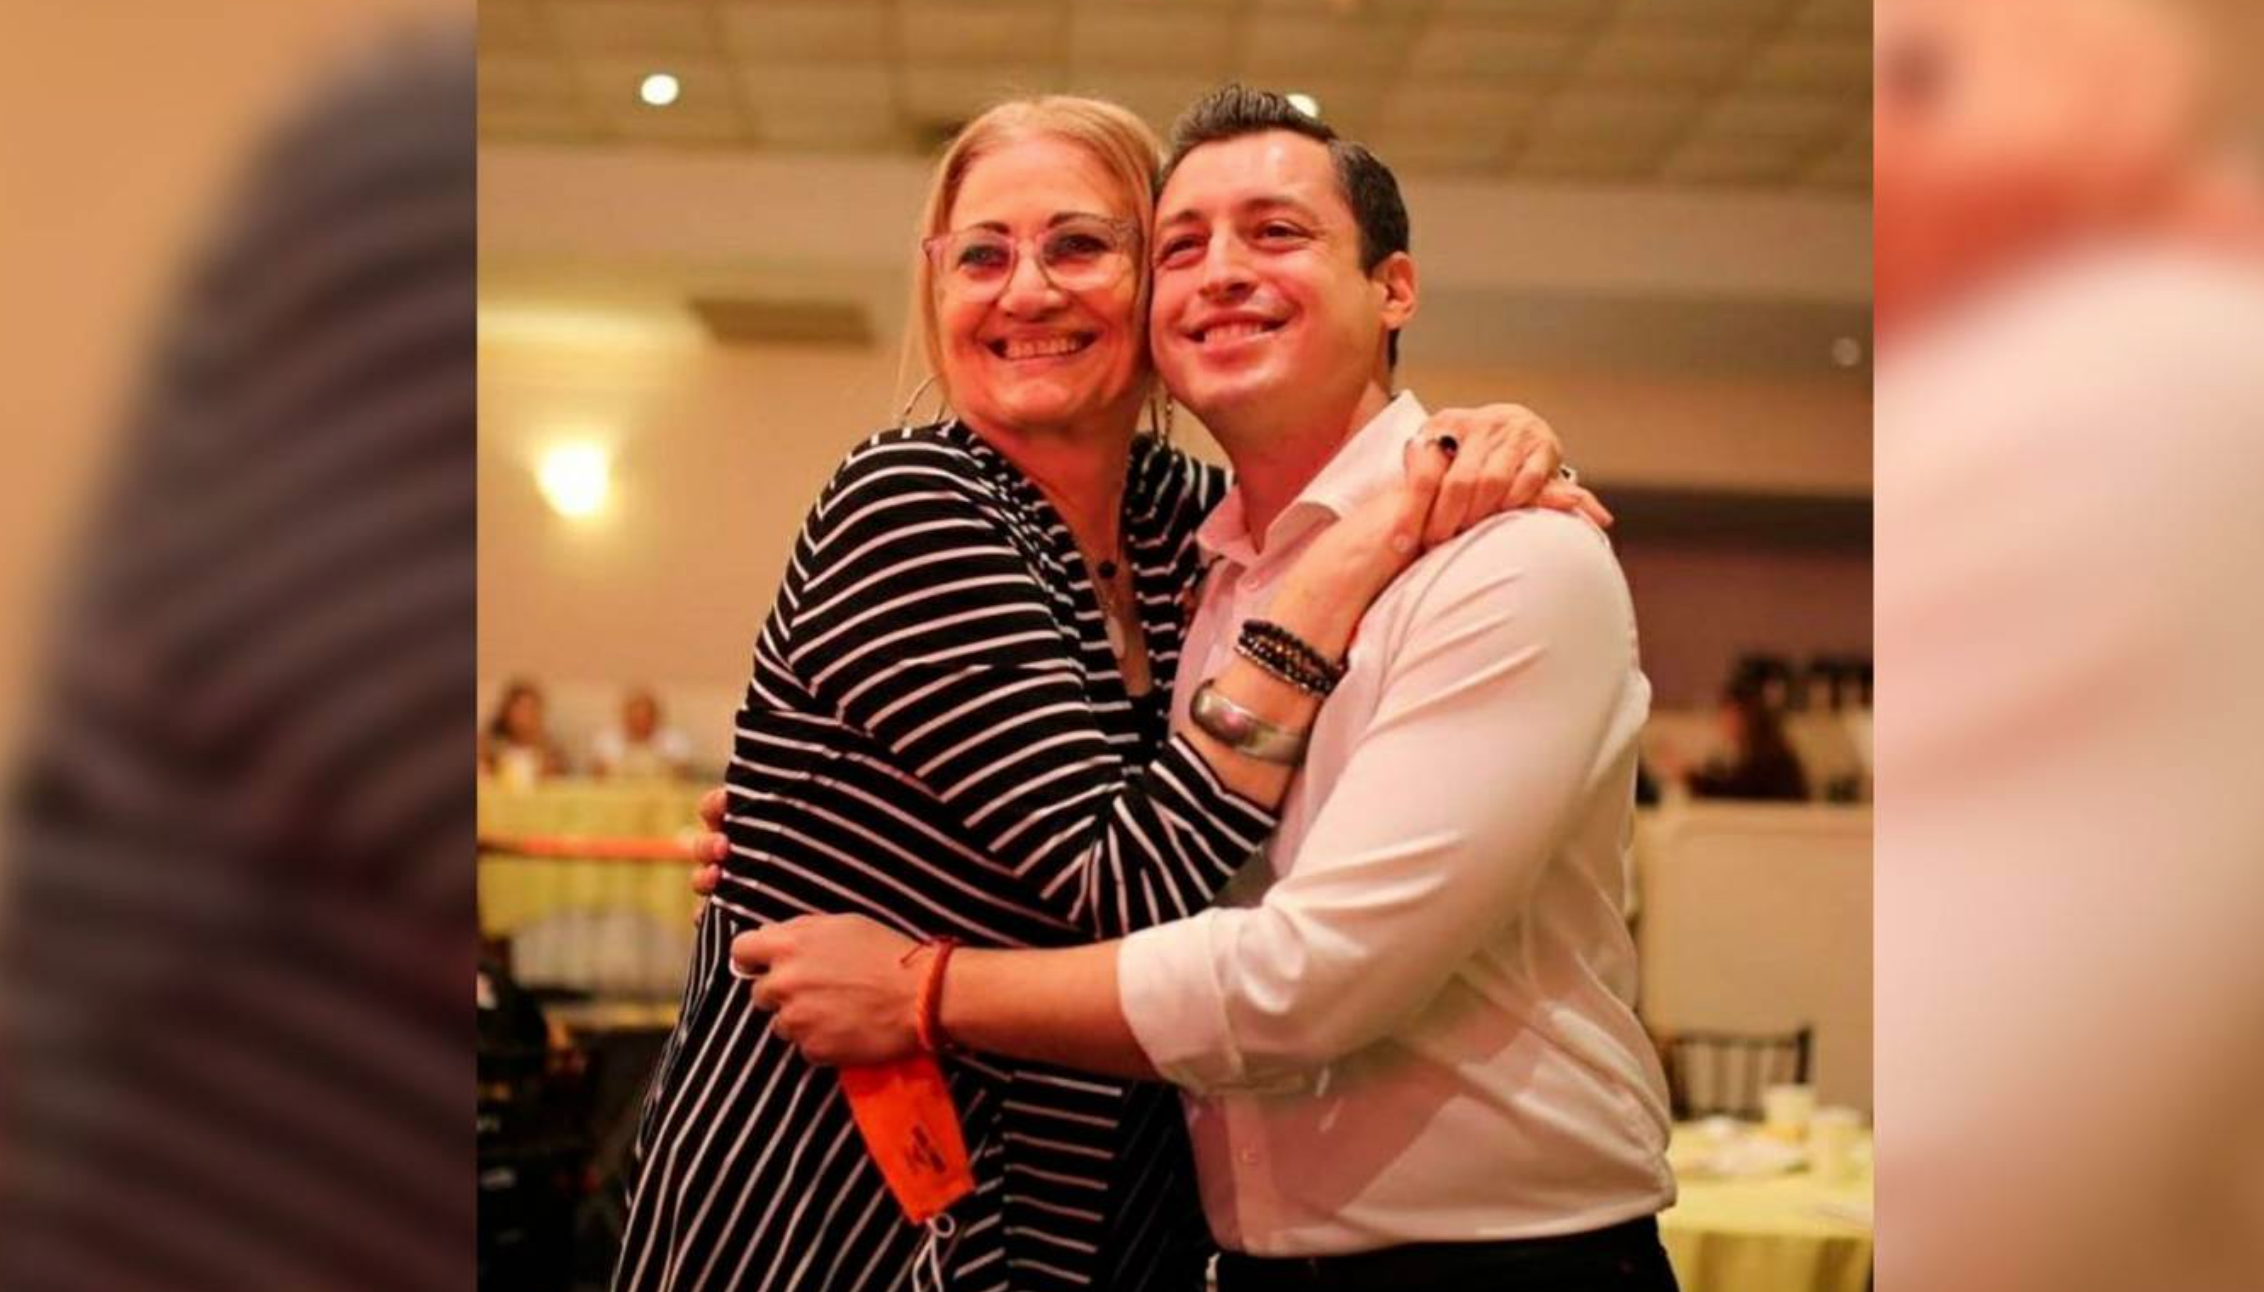 Fallece Hilda Elisa, madre adoptiva de Luis Donaldo Colosio Riojas, por cáncer